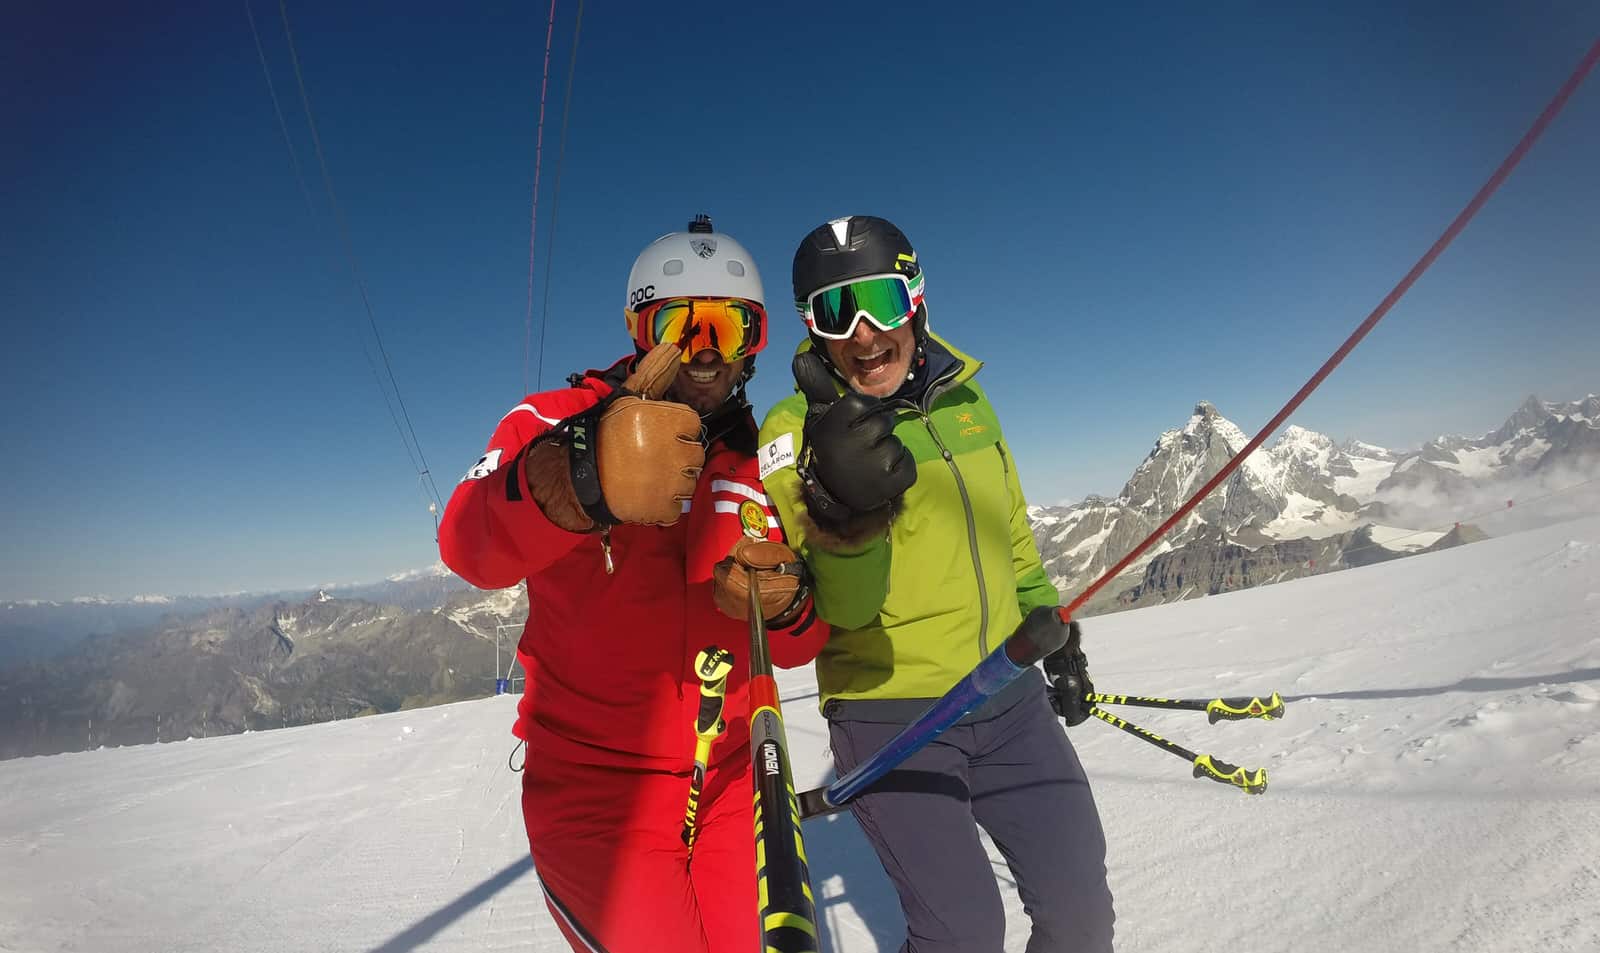 courmayeur private ski lesson